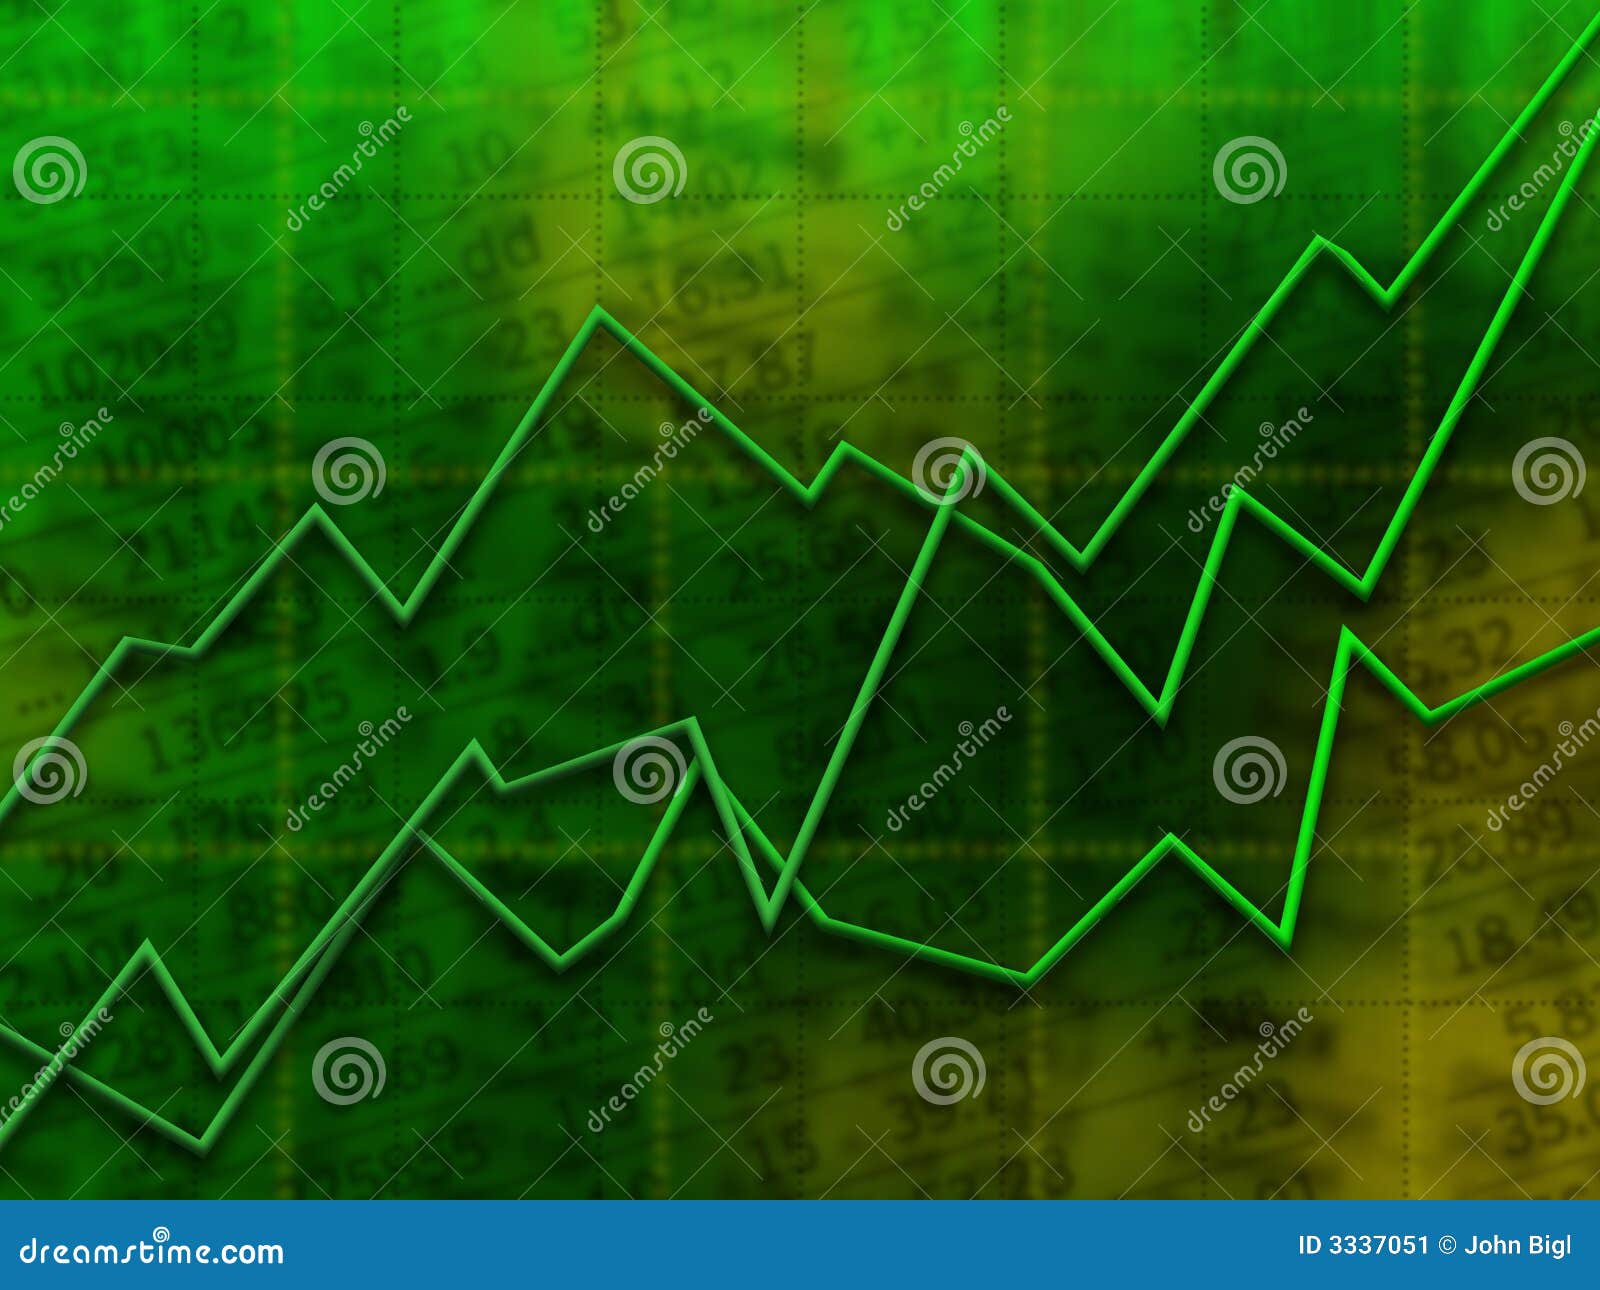 green market graph